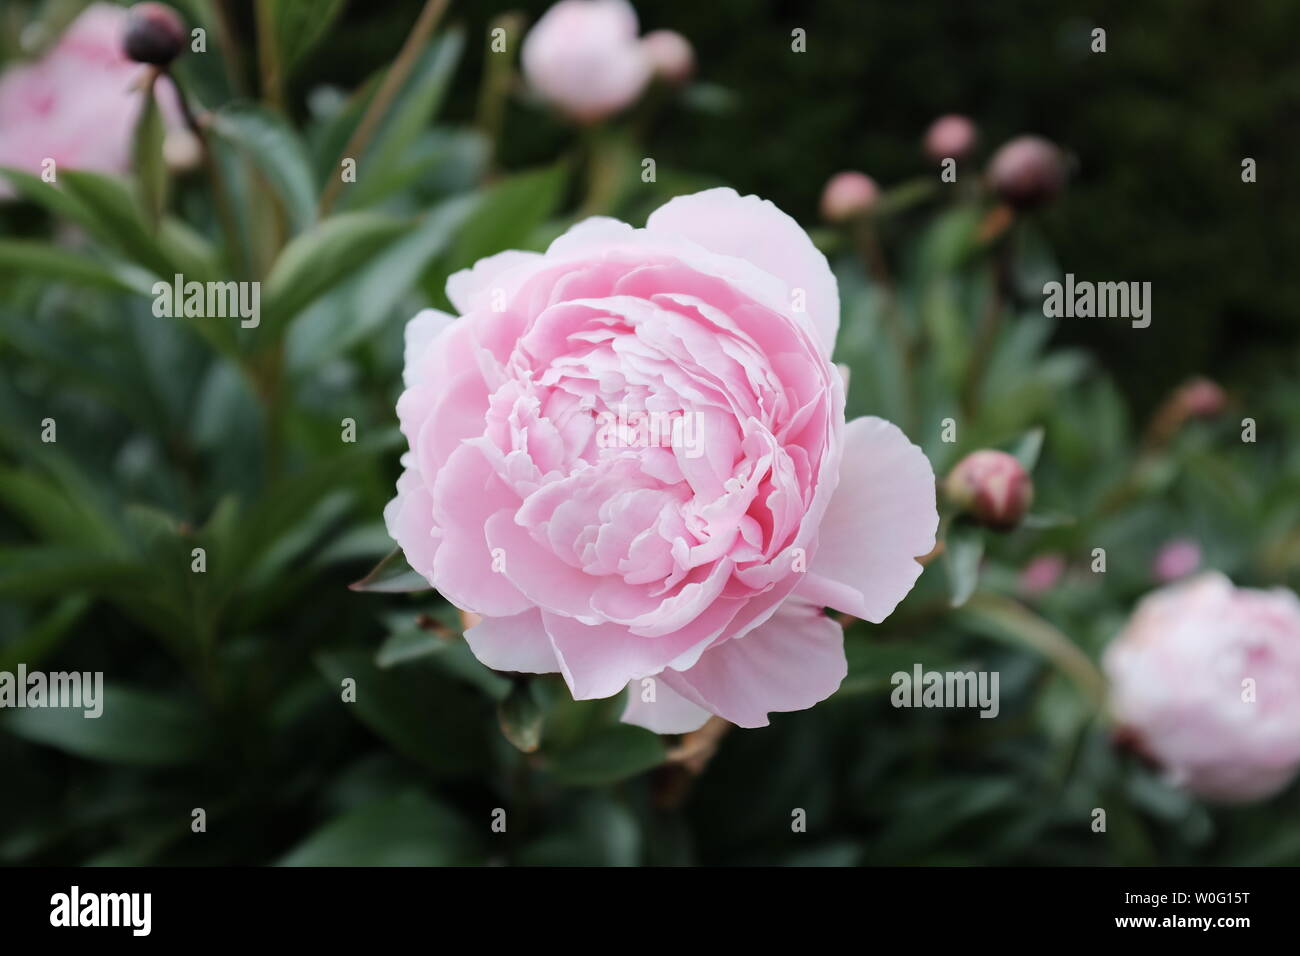 Incredibile rosa peonia fiore in fiore su un bel giorno d'estate. Foto Stock